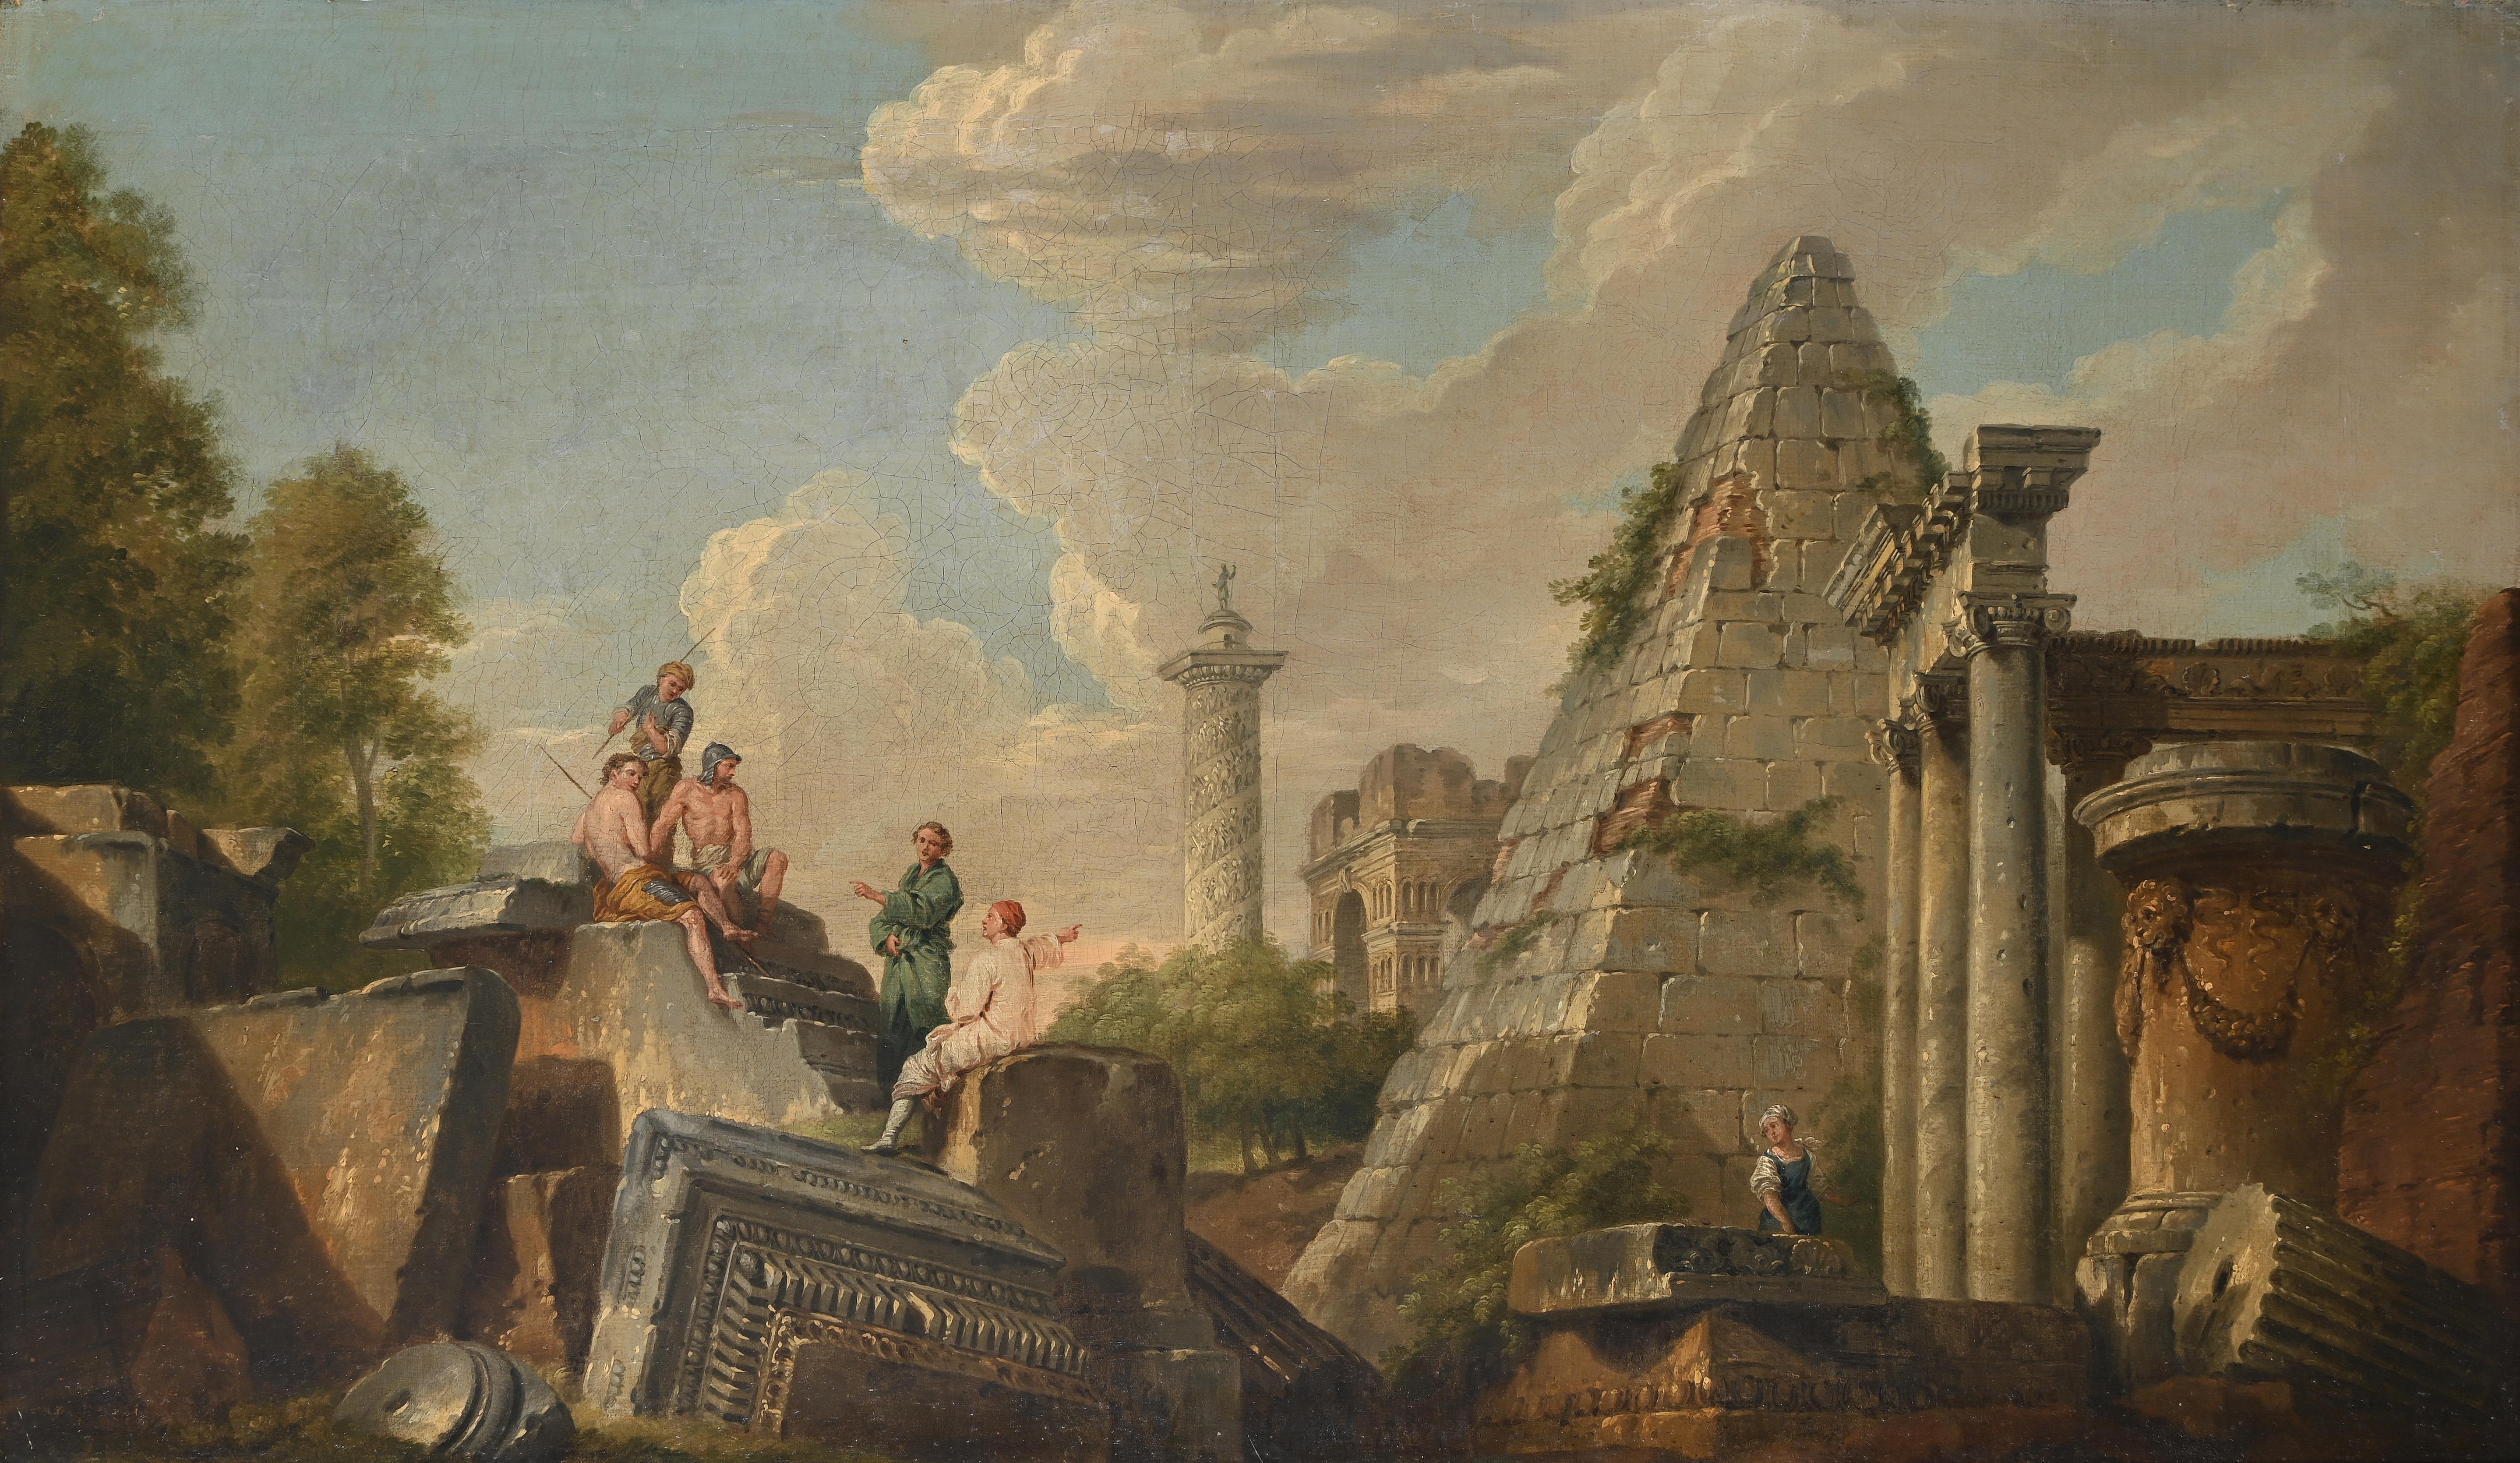 Paar italienische Landschaften des 18. Jahrhunderts mit klassischen Ruinen und Figuren – Painting von Giovanni Paolo Panini